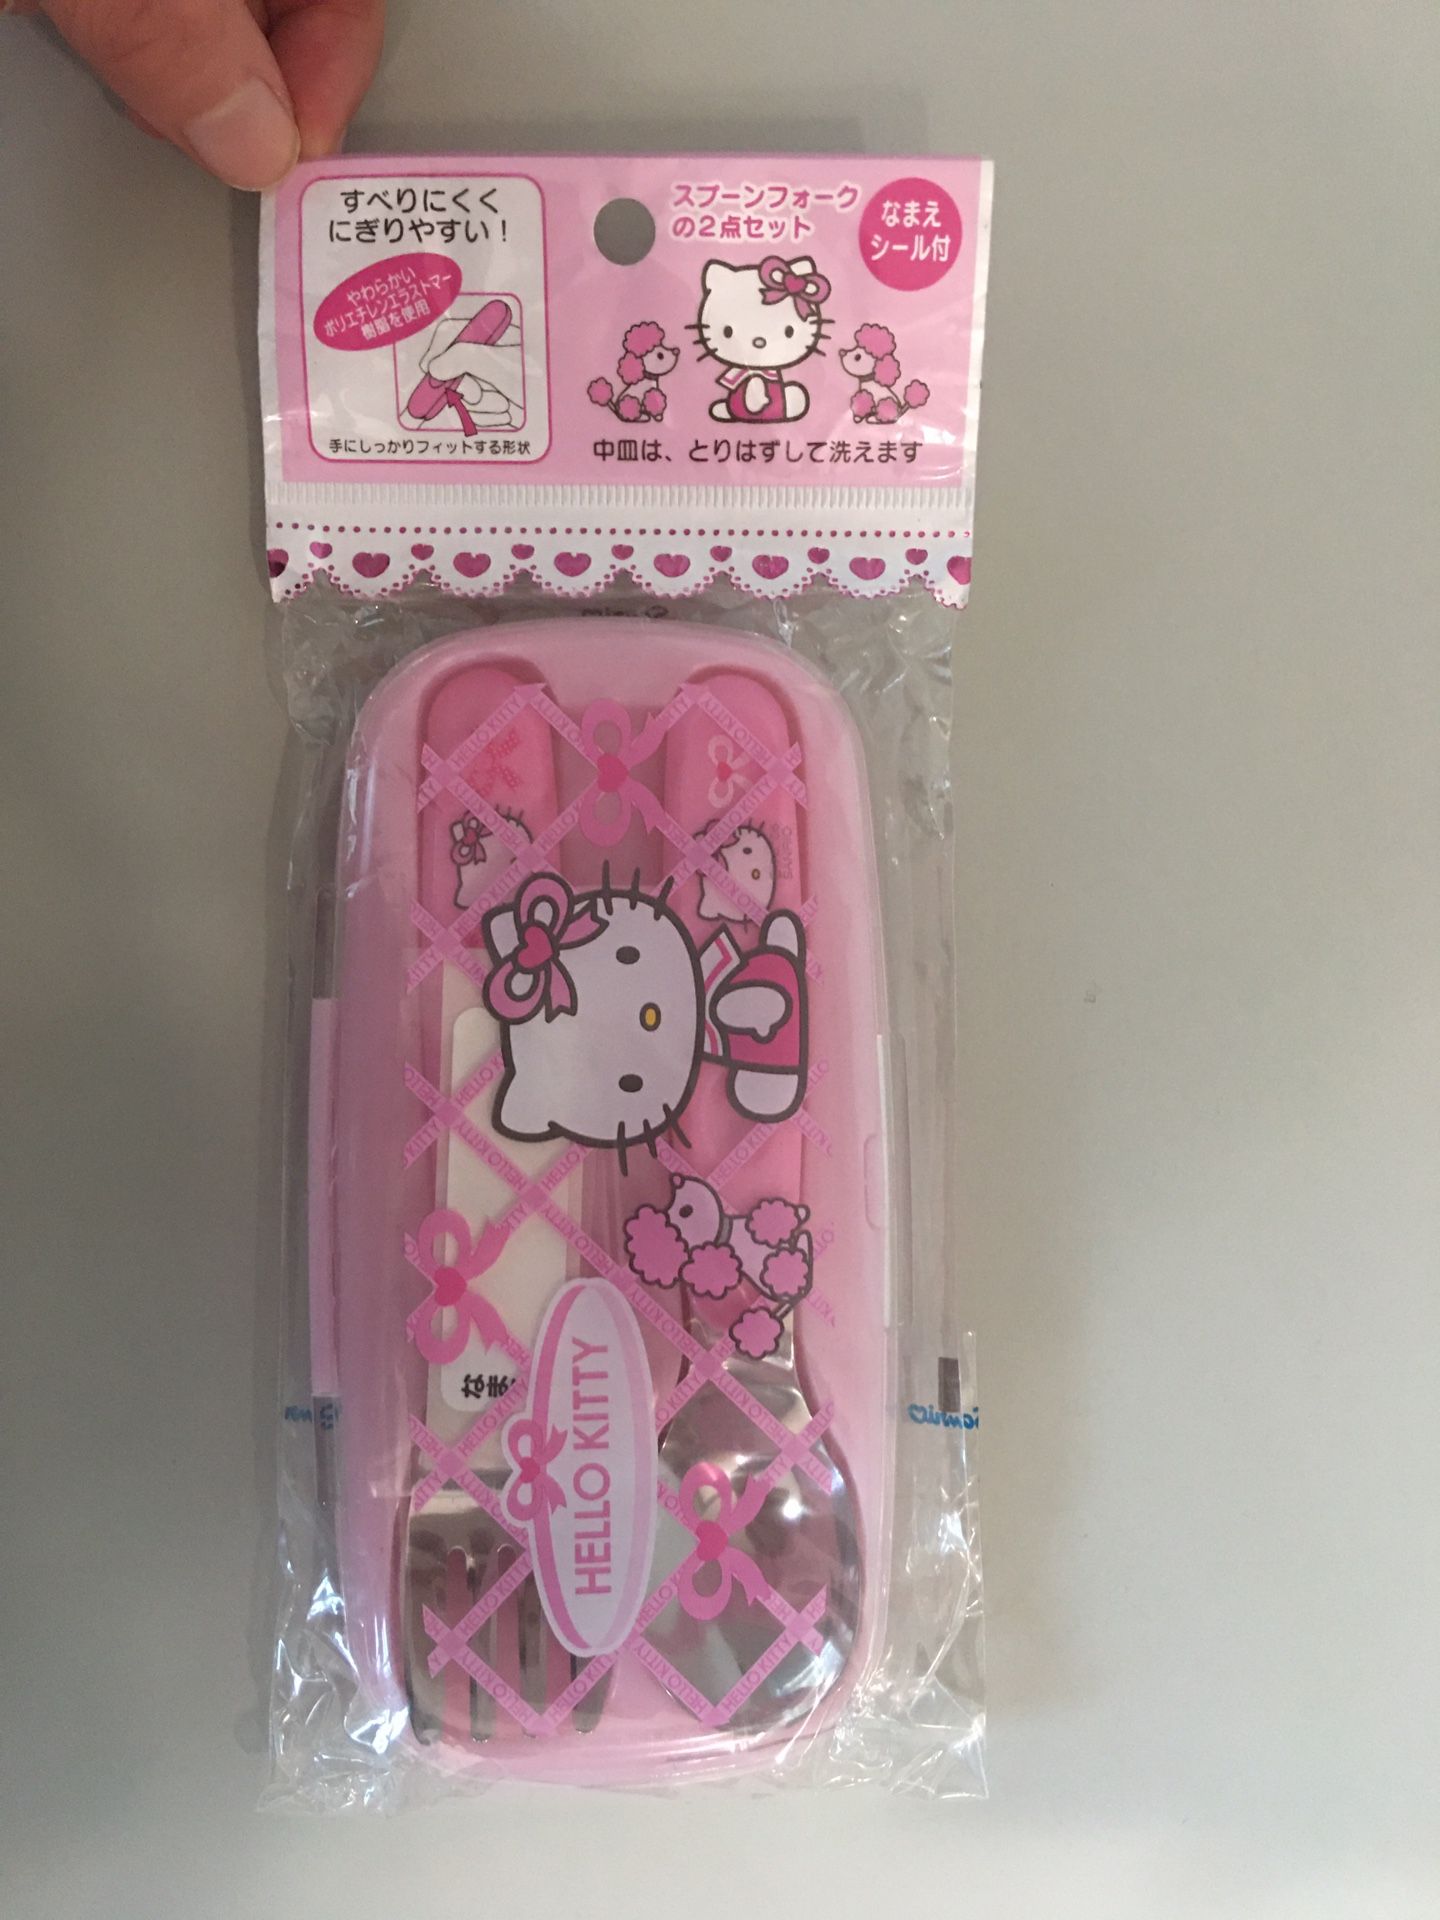 Hello Kitty utensil set